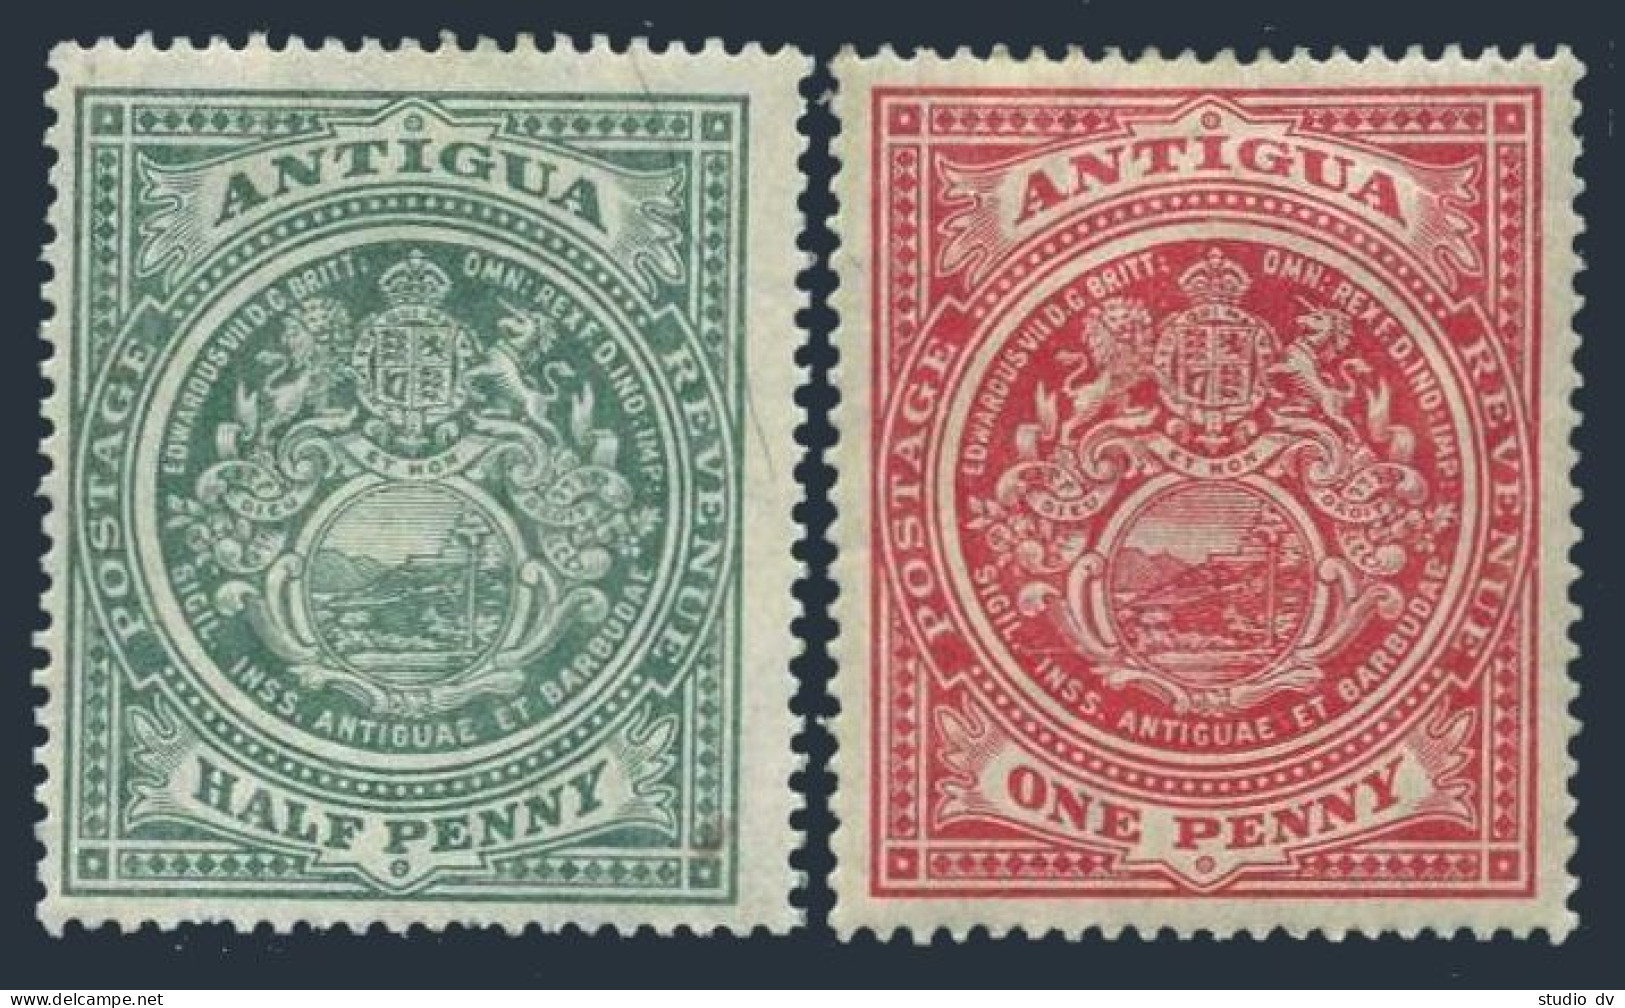 Antigua 31-32, MNH. Michel 26-27. Seal Of The Colony, 1908. - Antigua Et Barbuda (1981-...)